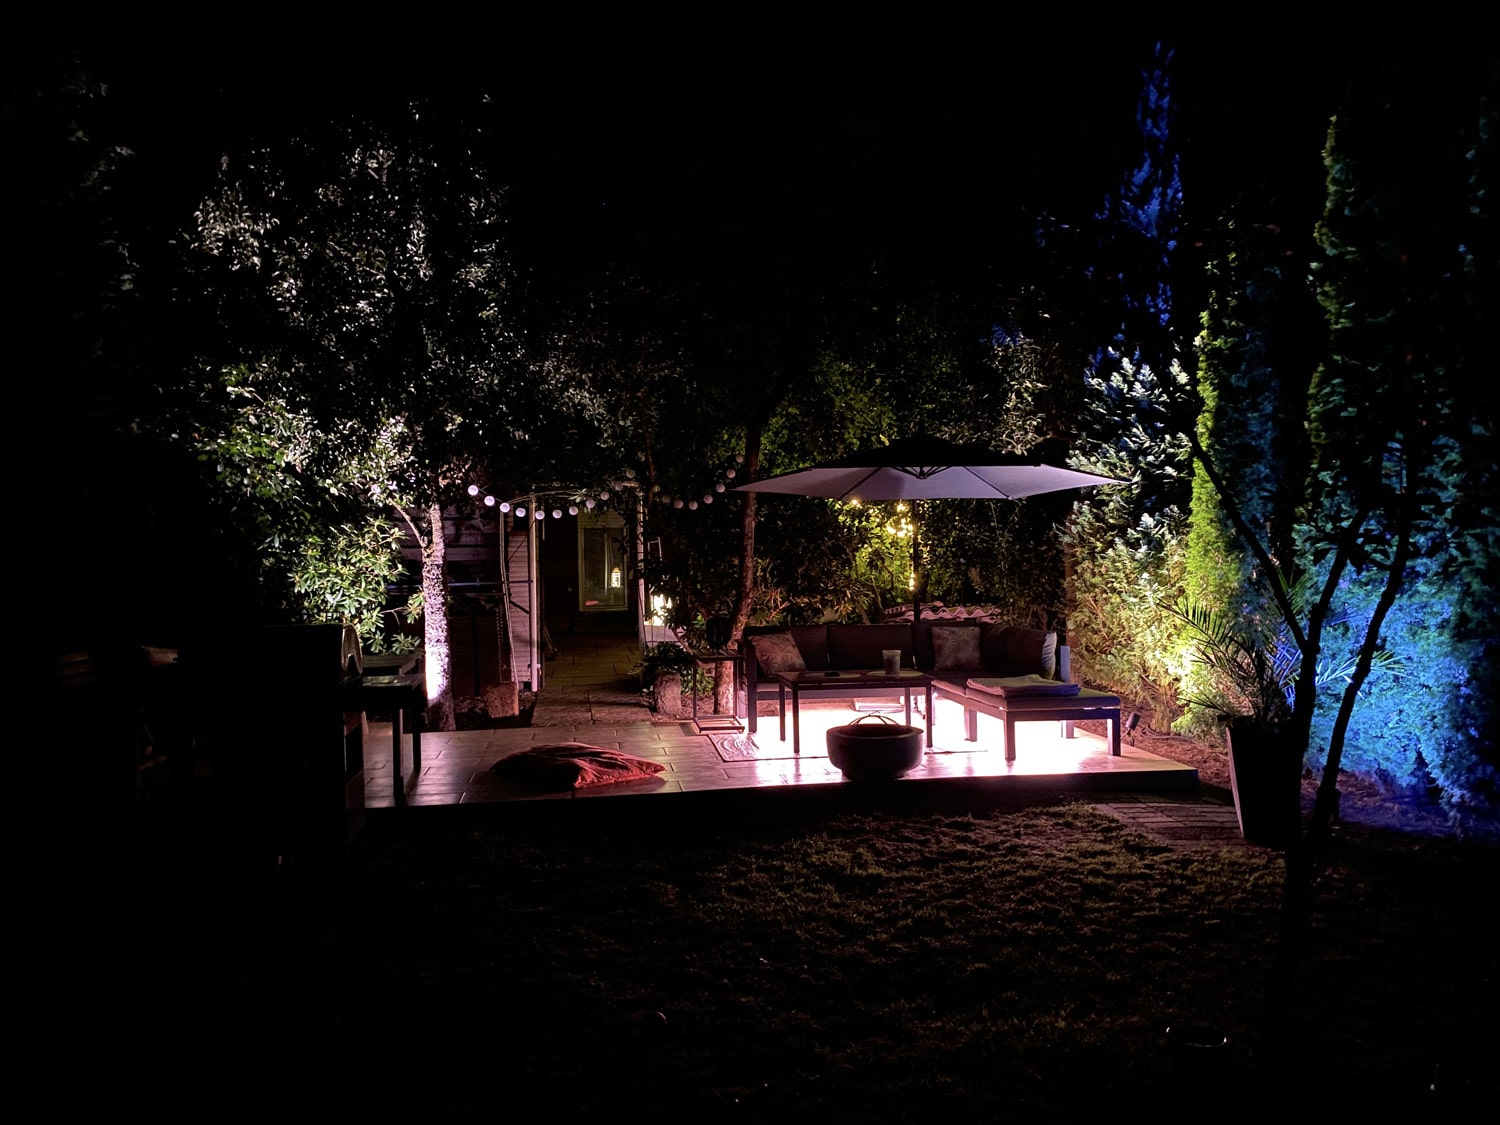 Hueblog: Zeig‘ dein Hue: Lily und Outdoor Lightstrip verschönern Lounge im Garten